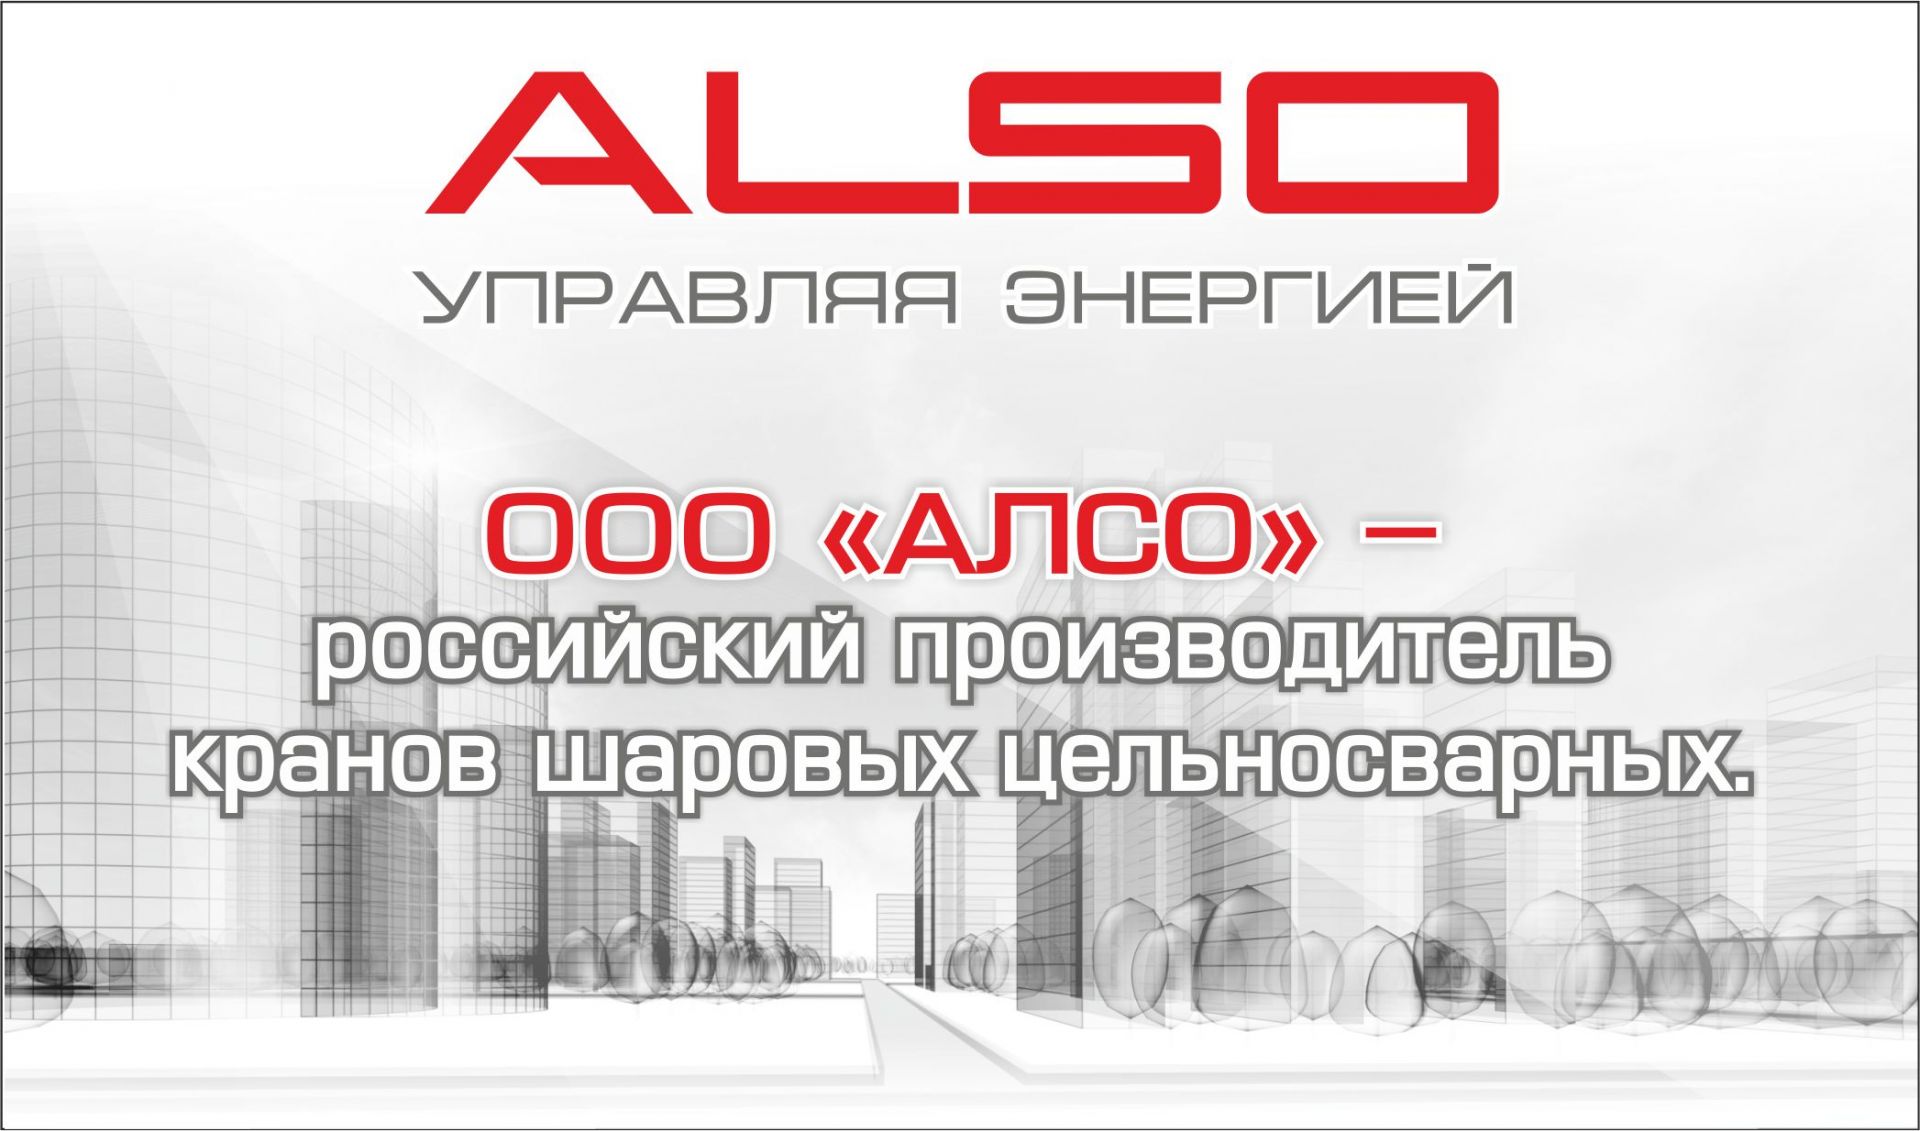 АЛСО - производитель и поставщик шаровых кранов